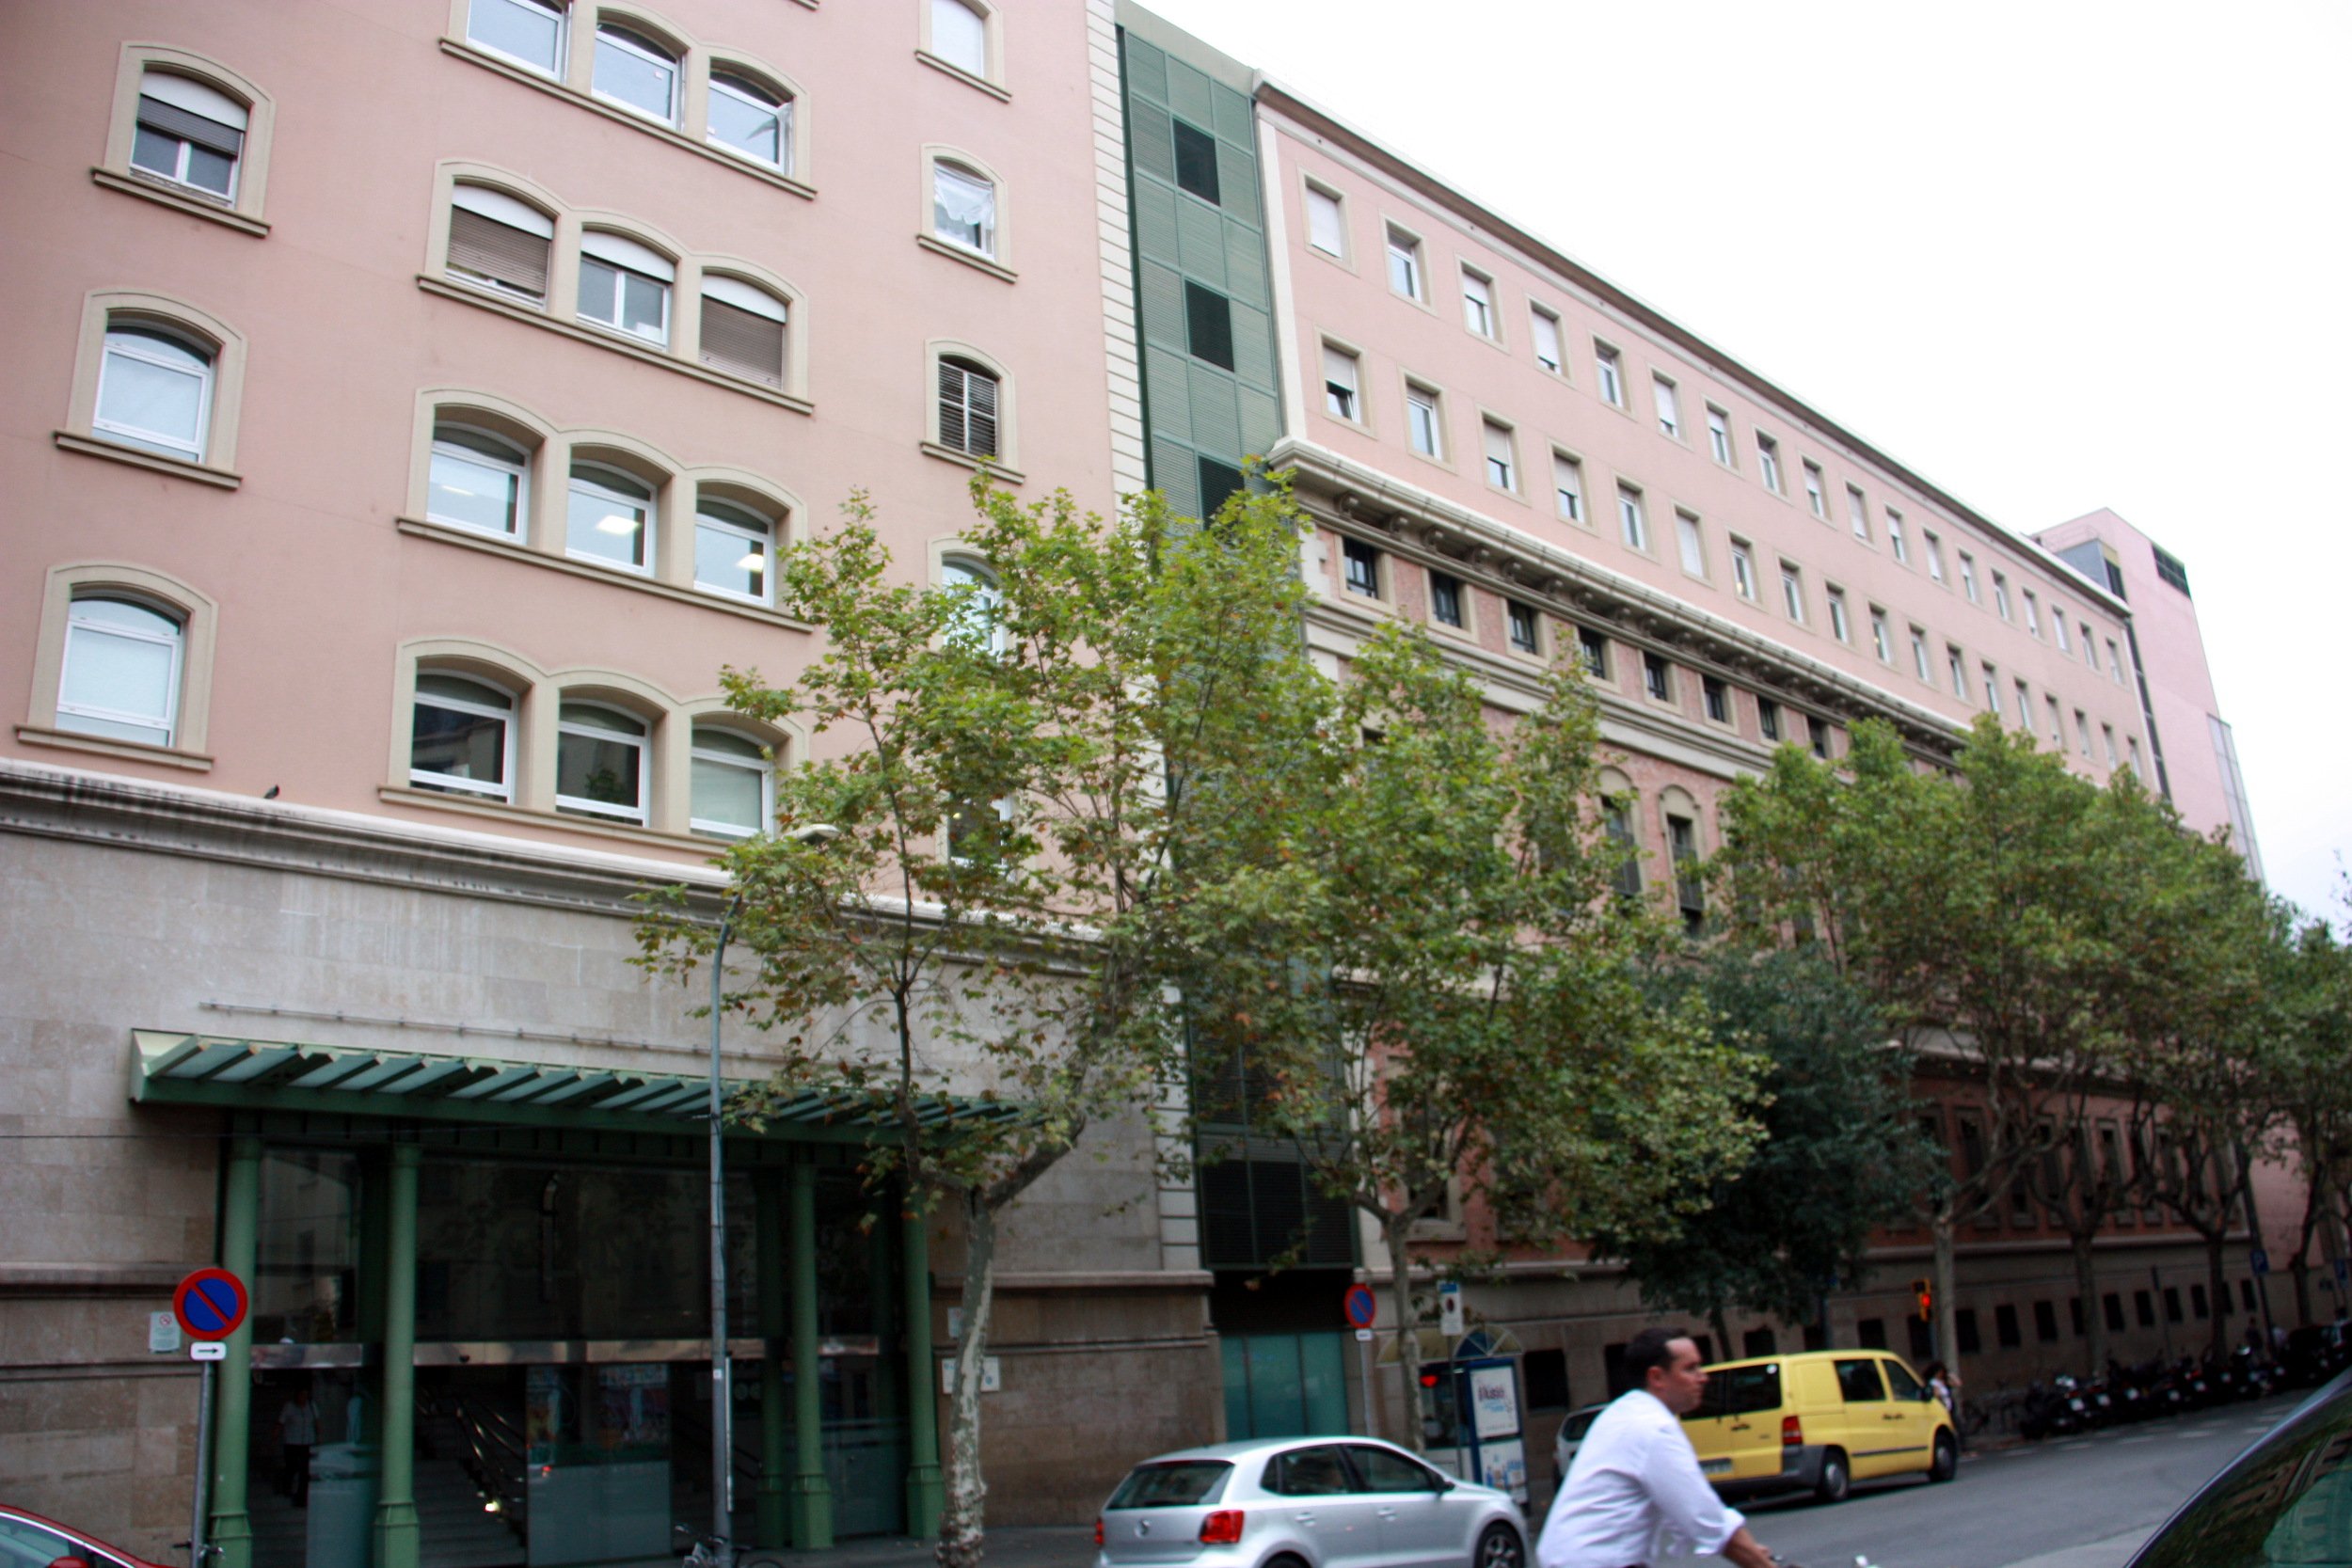 Catorce hospitales catalanes reconocidos entre los 40 mejores de España